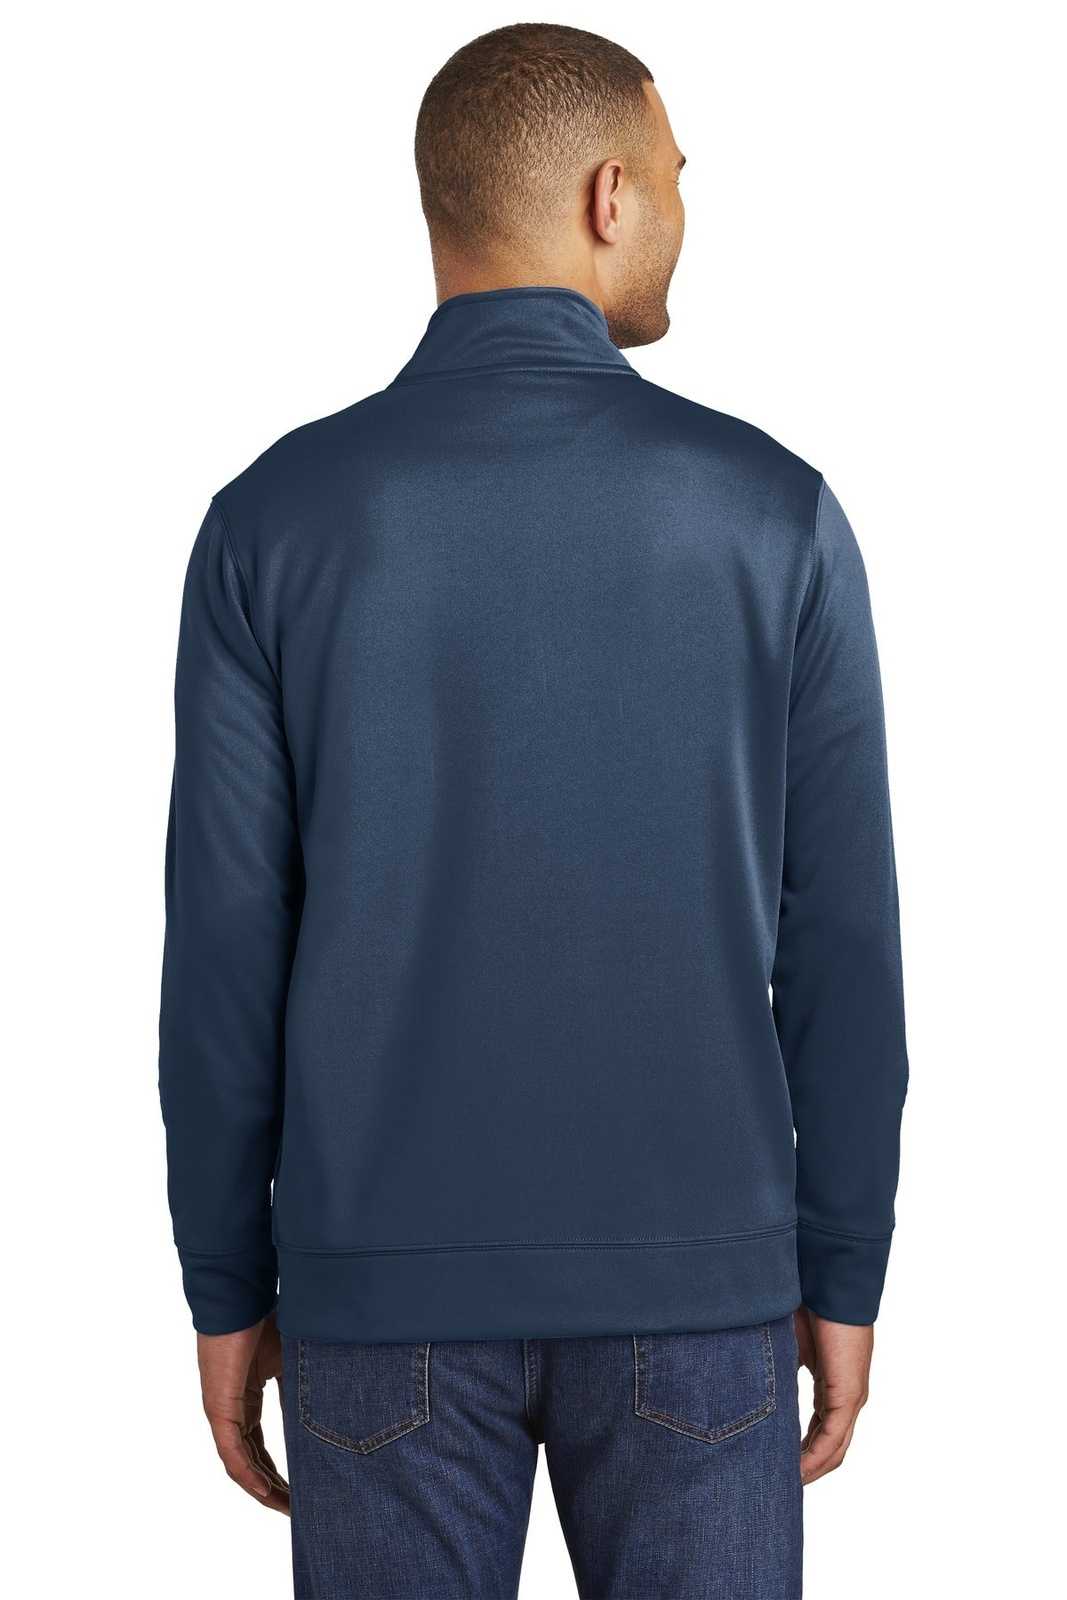 Port &amp; Company PC590Q Fleece 1/4-Zip Pullover Sweatshirt - Deep Navy - HIT a Double - 2